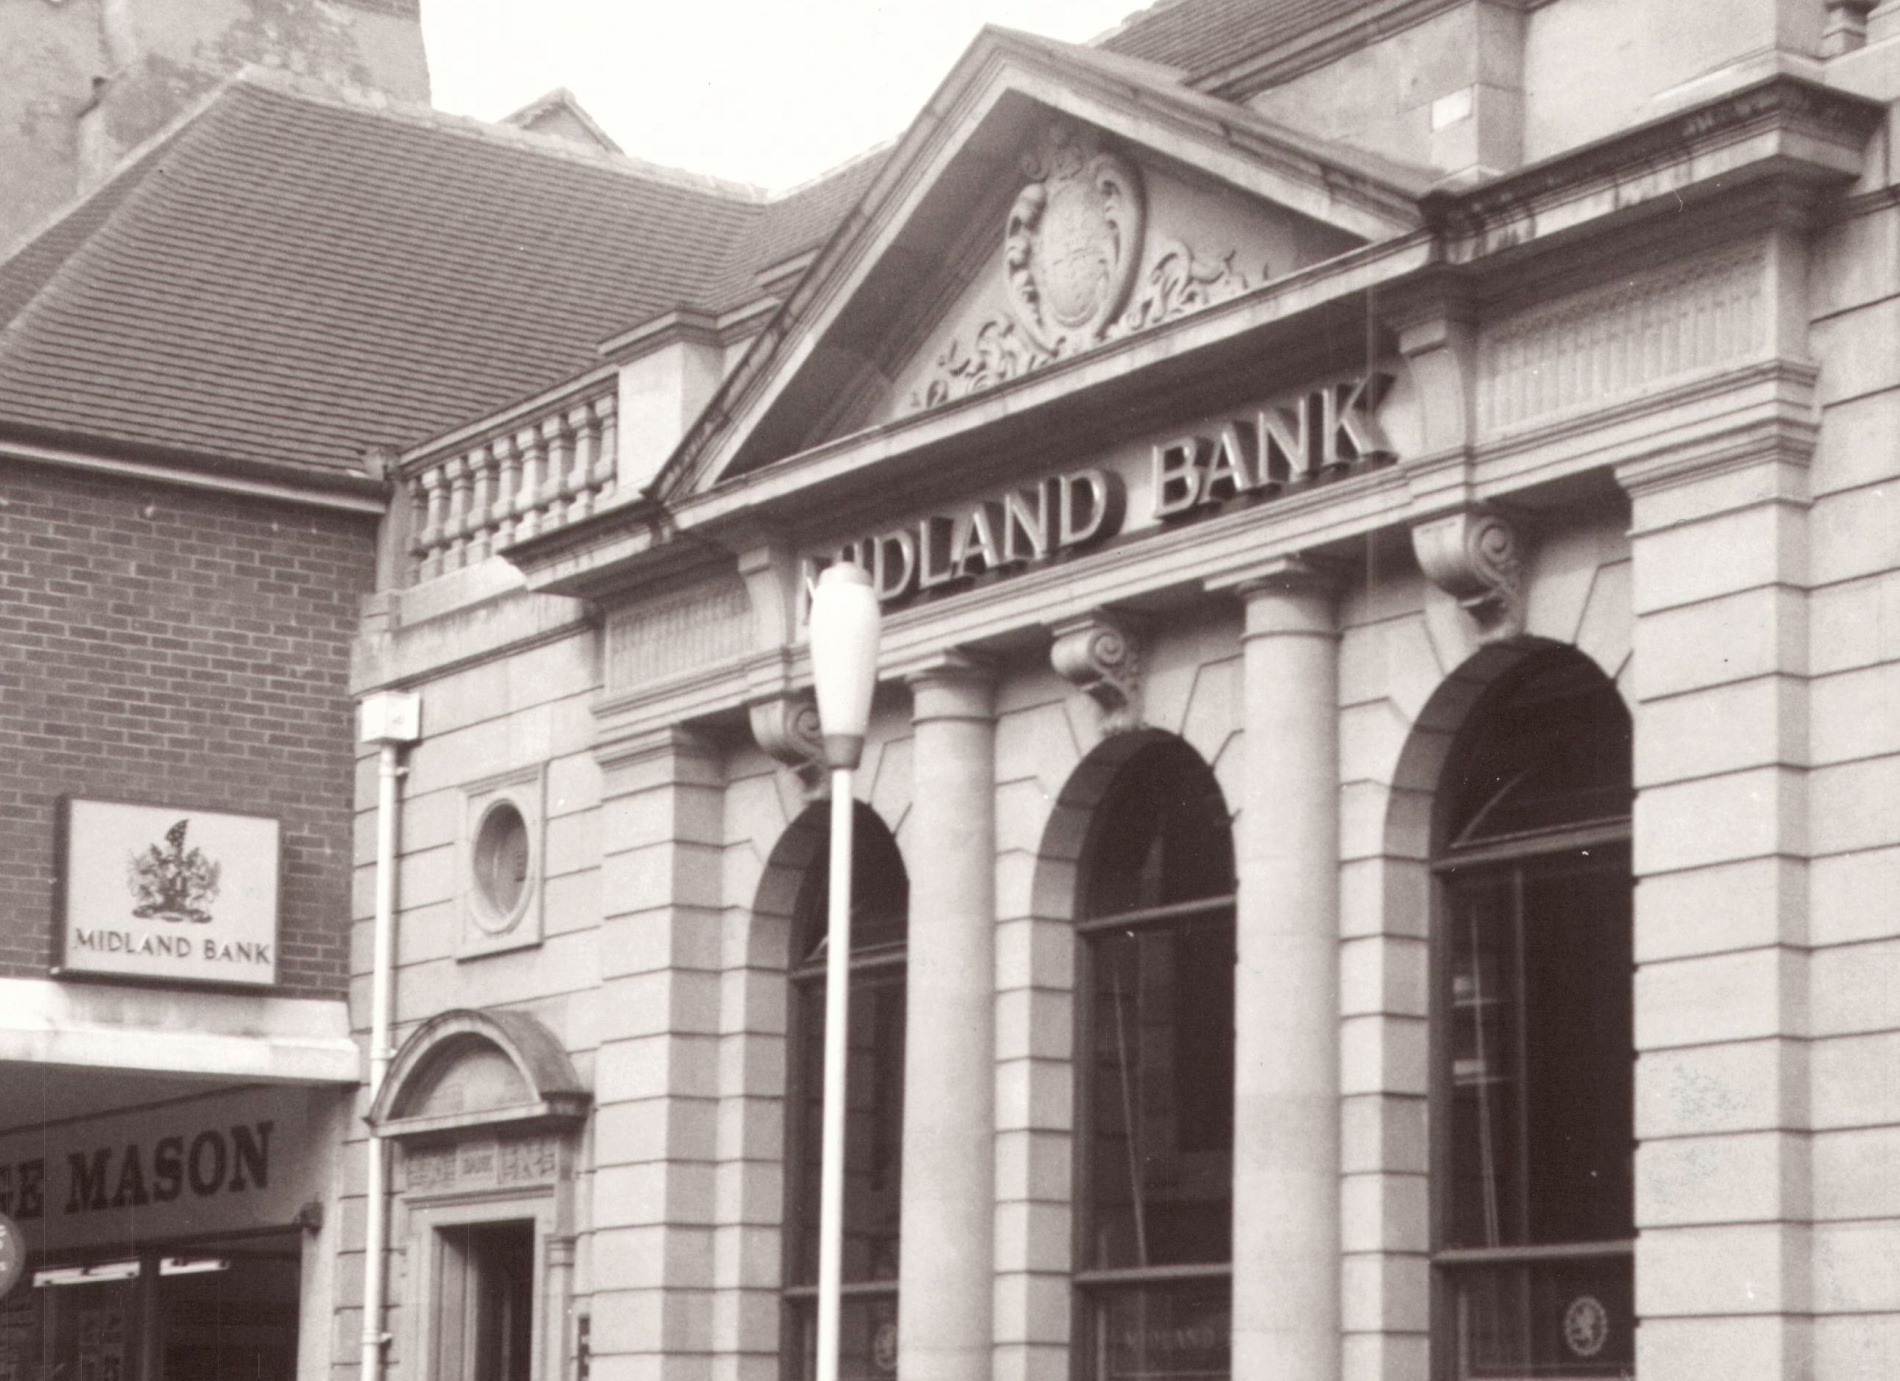 5 London and Midland Bank